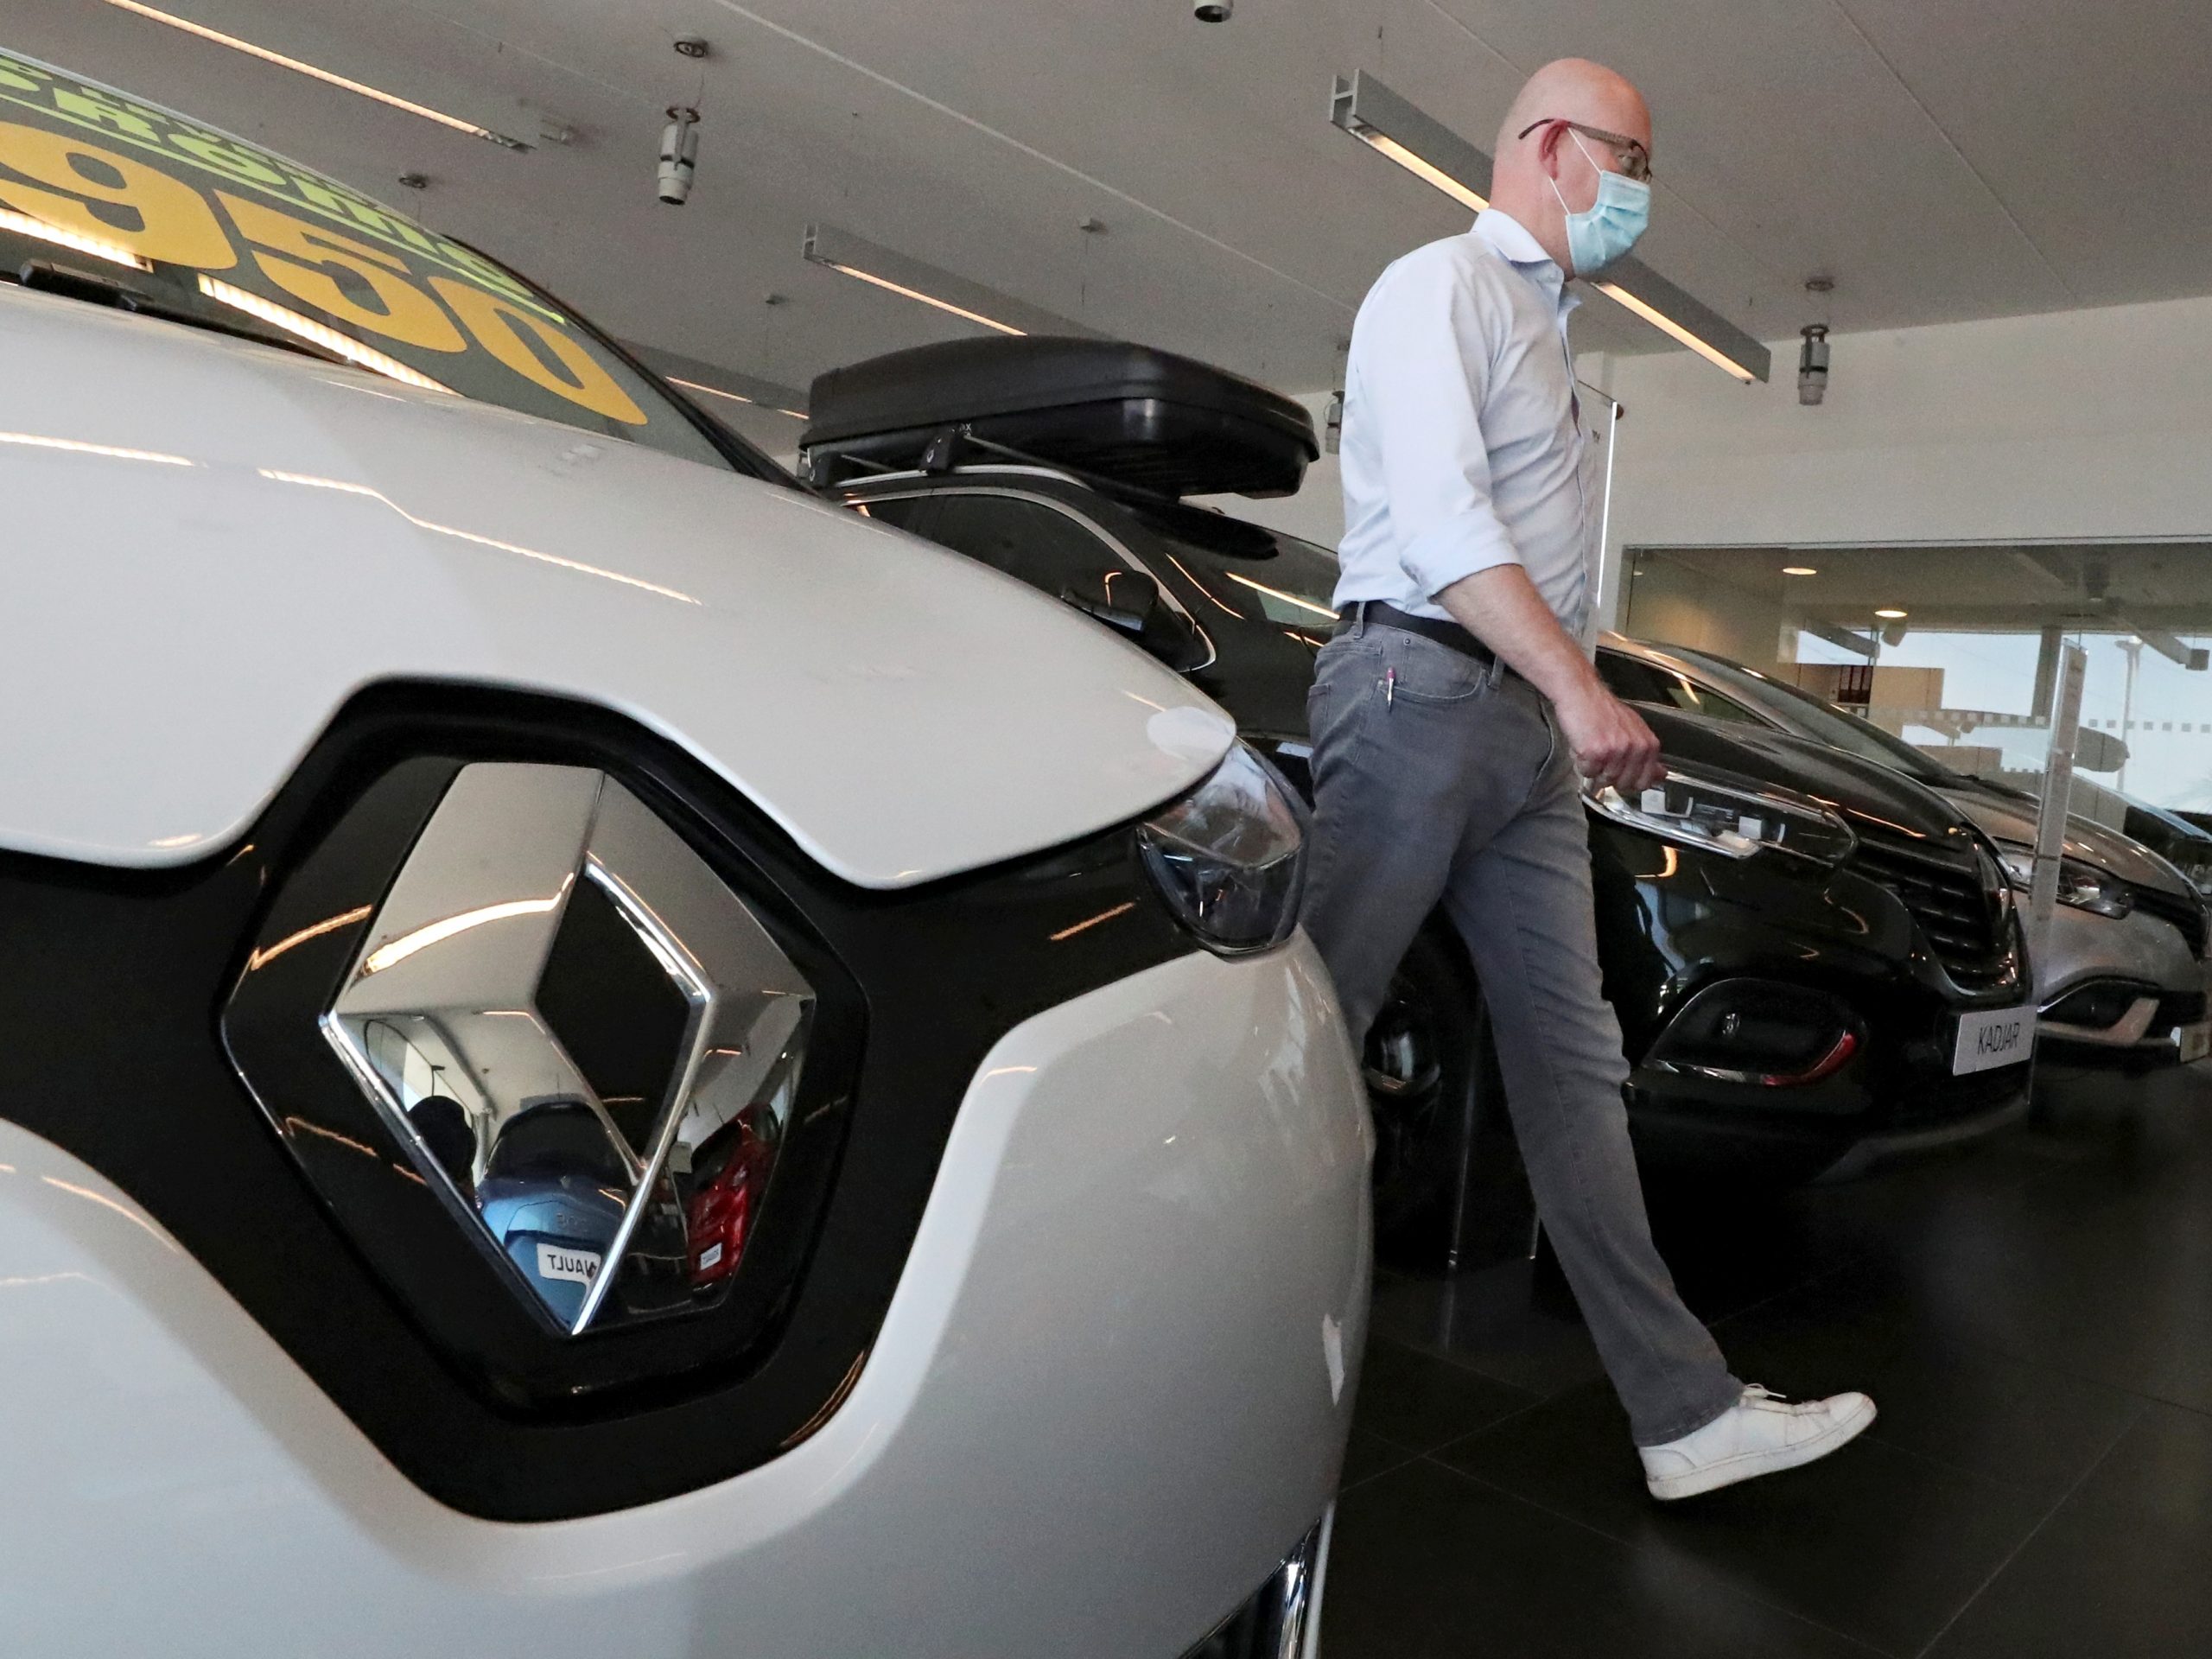 Telemacos klauw Pest Auto kopen in Nederland duurder dan in meeste andere EU-landen